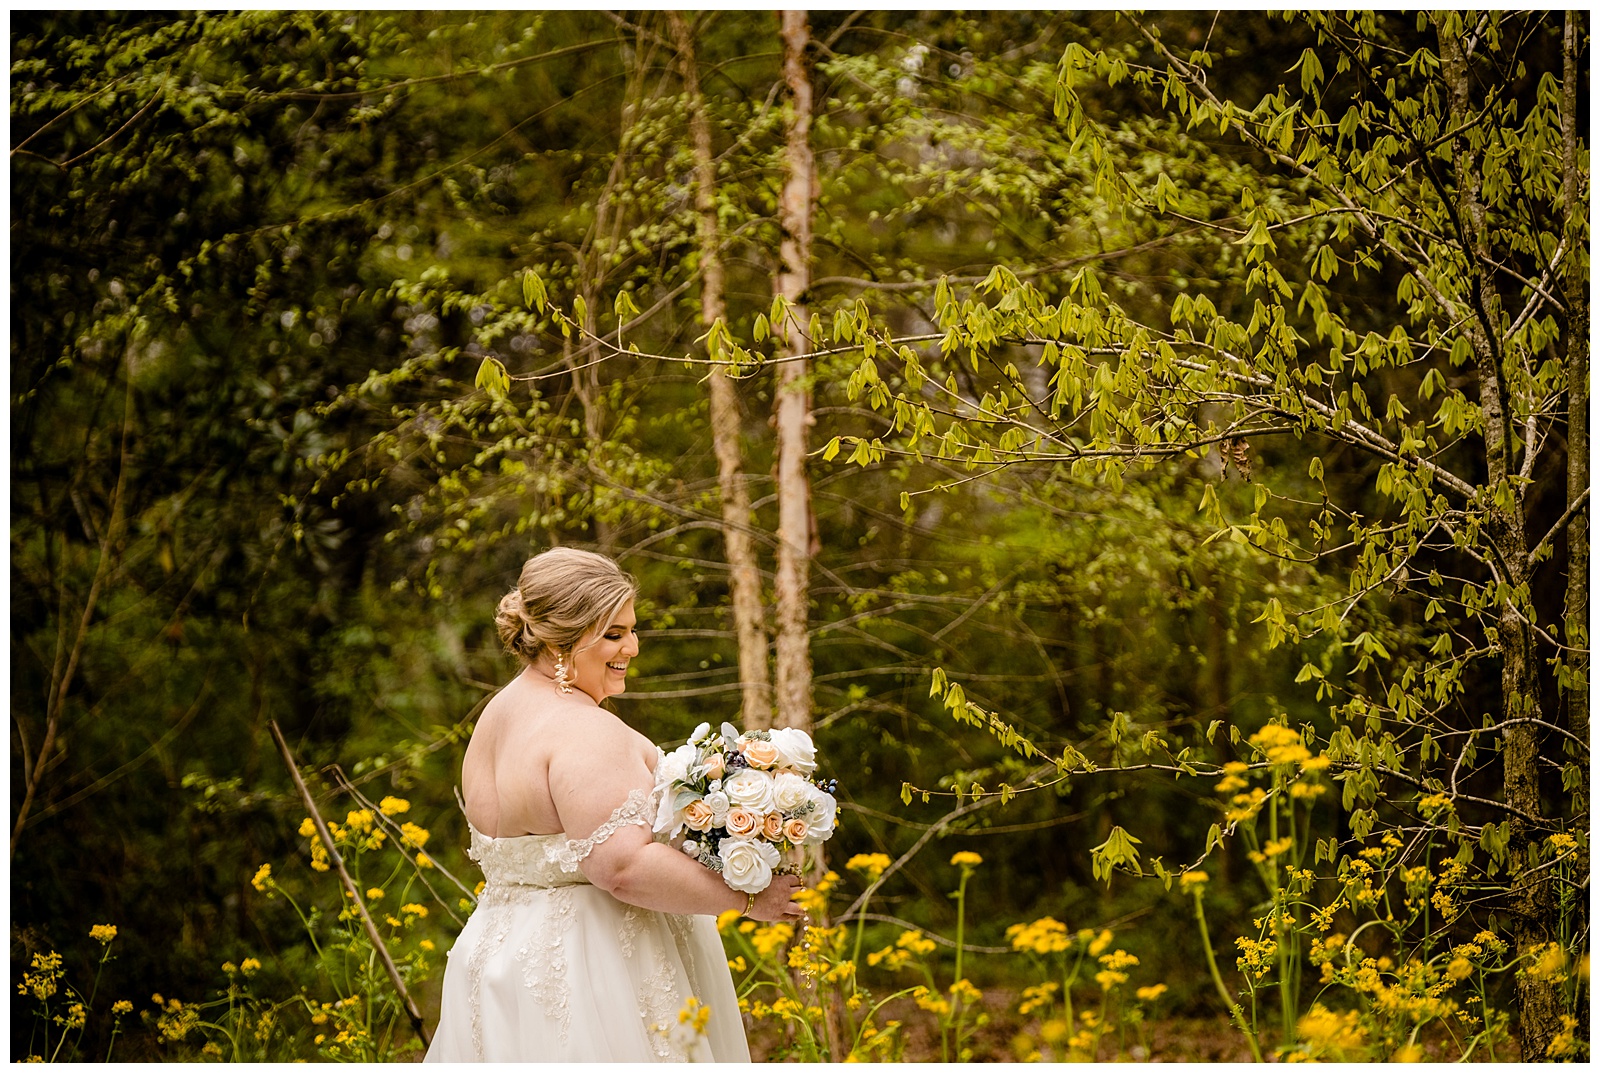 Barton Arboretum Photo Session - bride against greenery